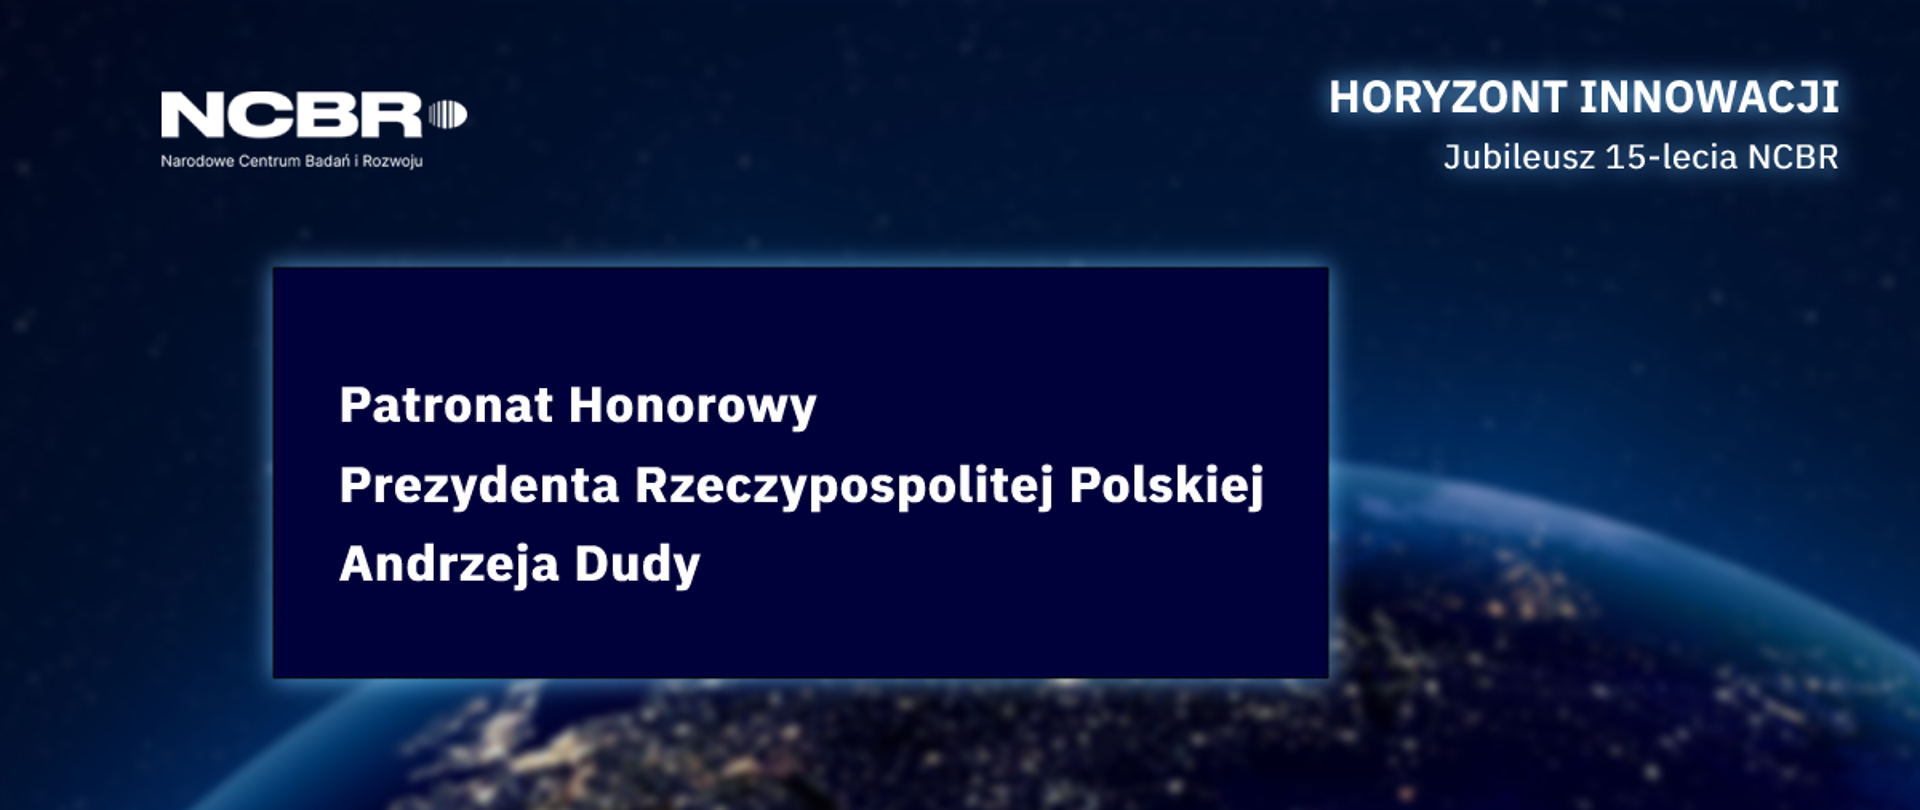 Konferencja NCBR pod Patronatem Honorowym
Prezydenta Rzeczypospolitej Polskiej Andrzeja Dudy
